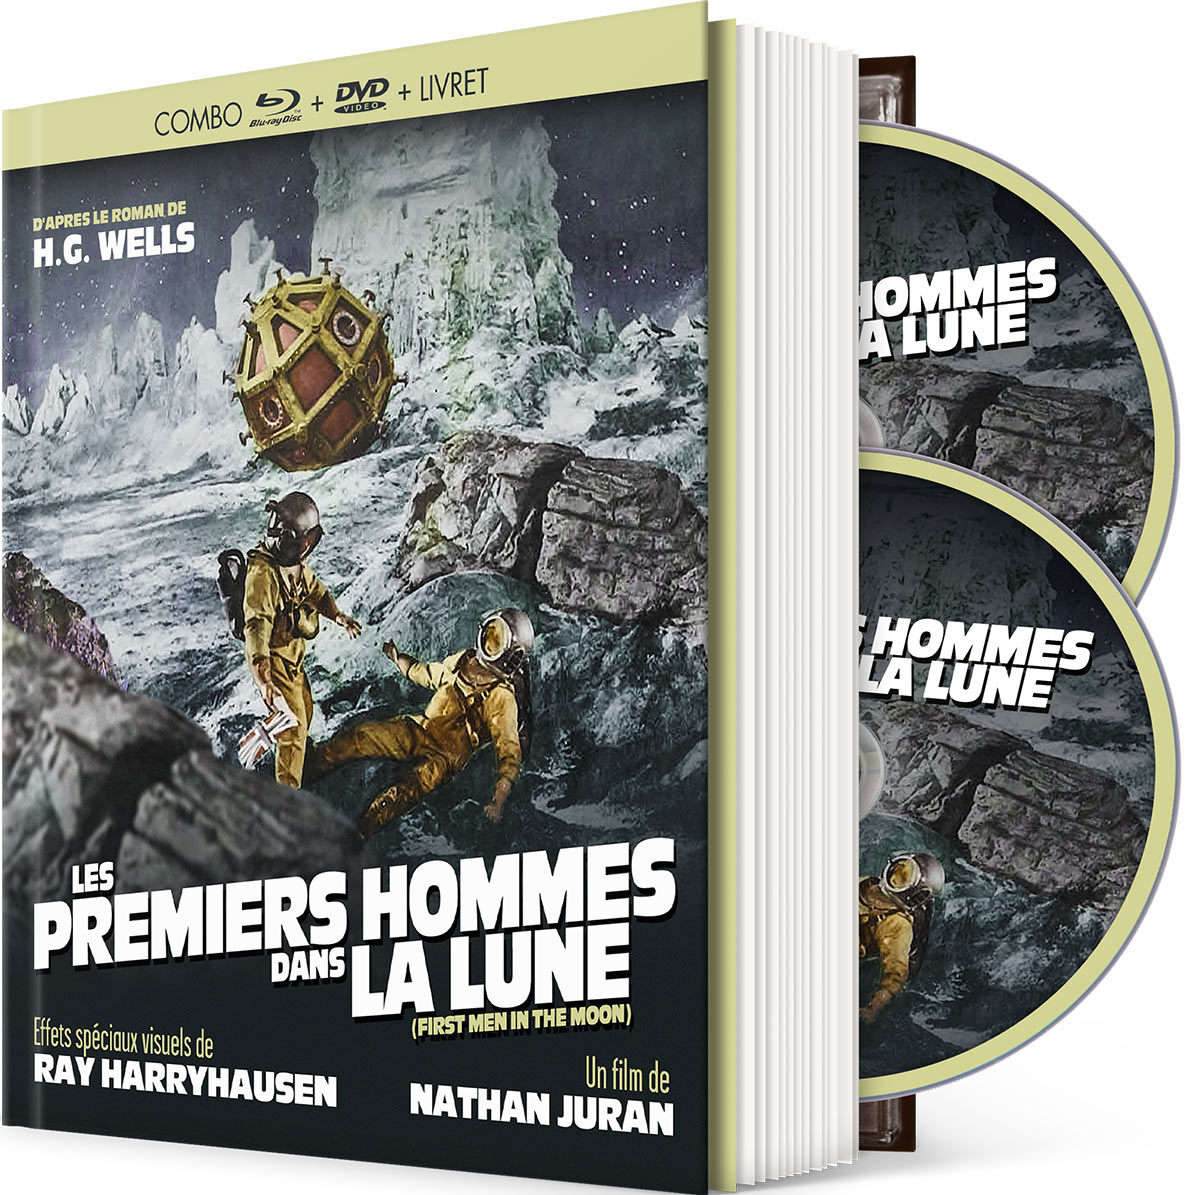 Les Premiers Hommes dans la Lune - Combo Blu-ray + DVD + Livret